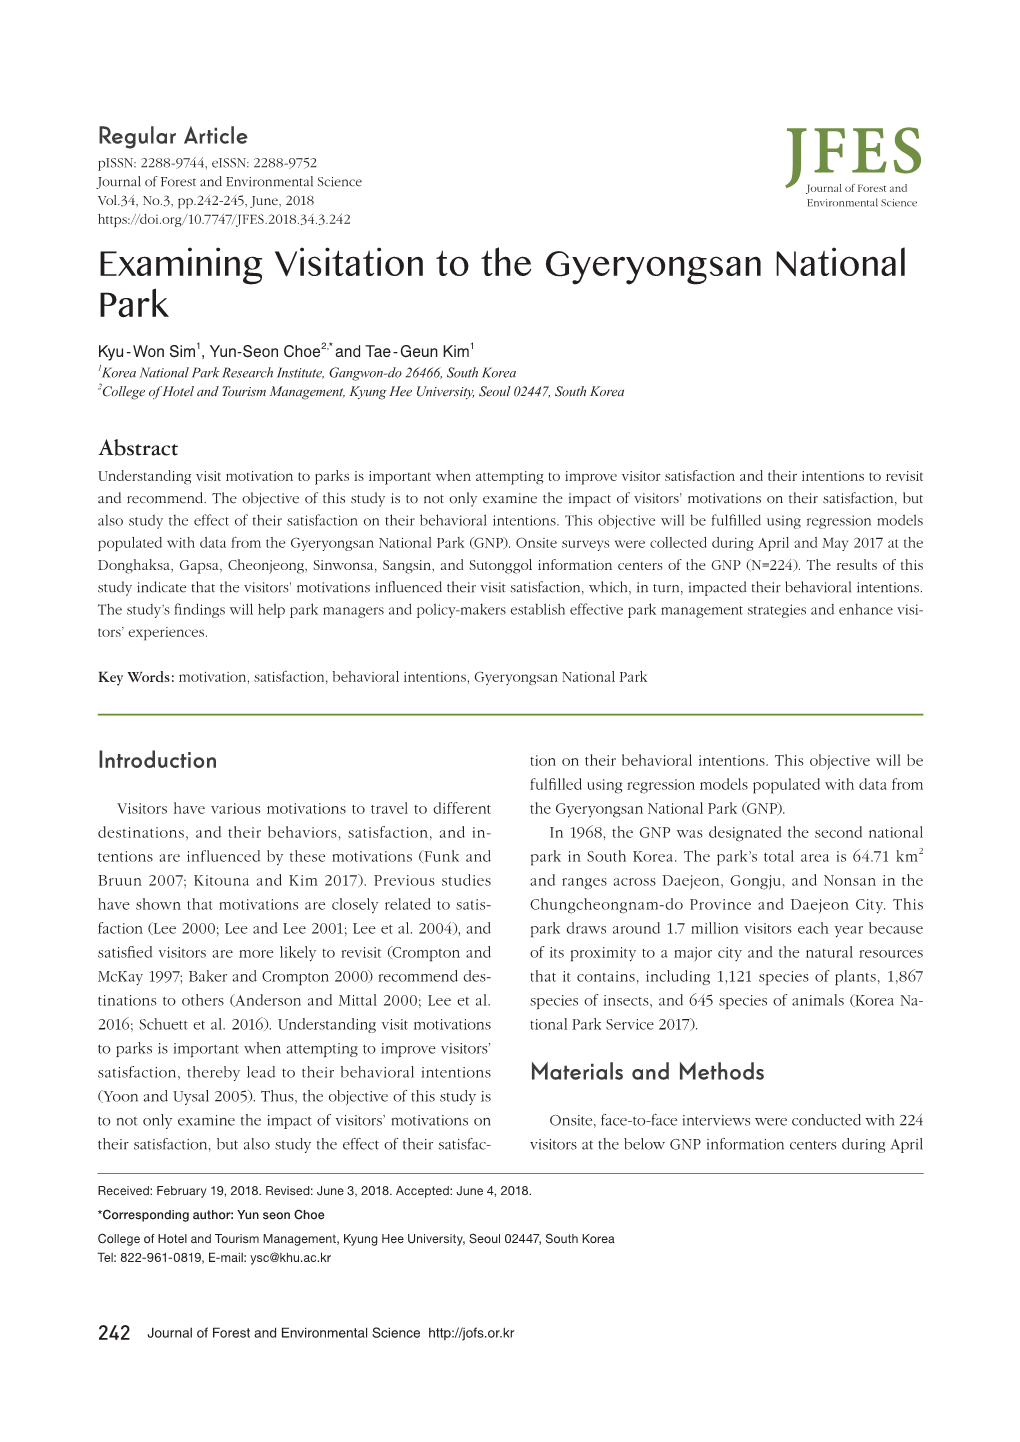 Examining Visitation to the Gyeryongsan National Park